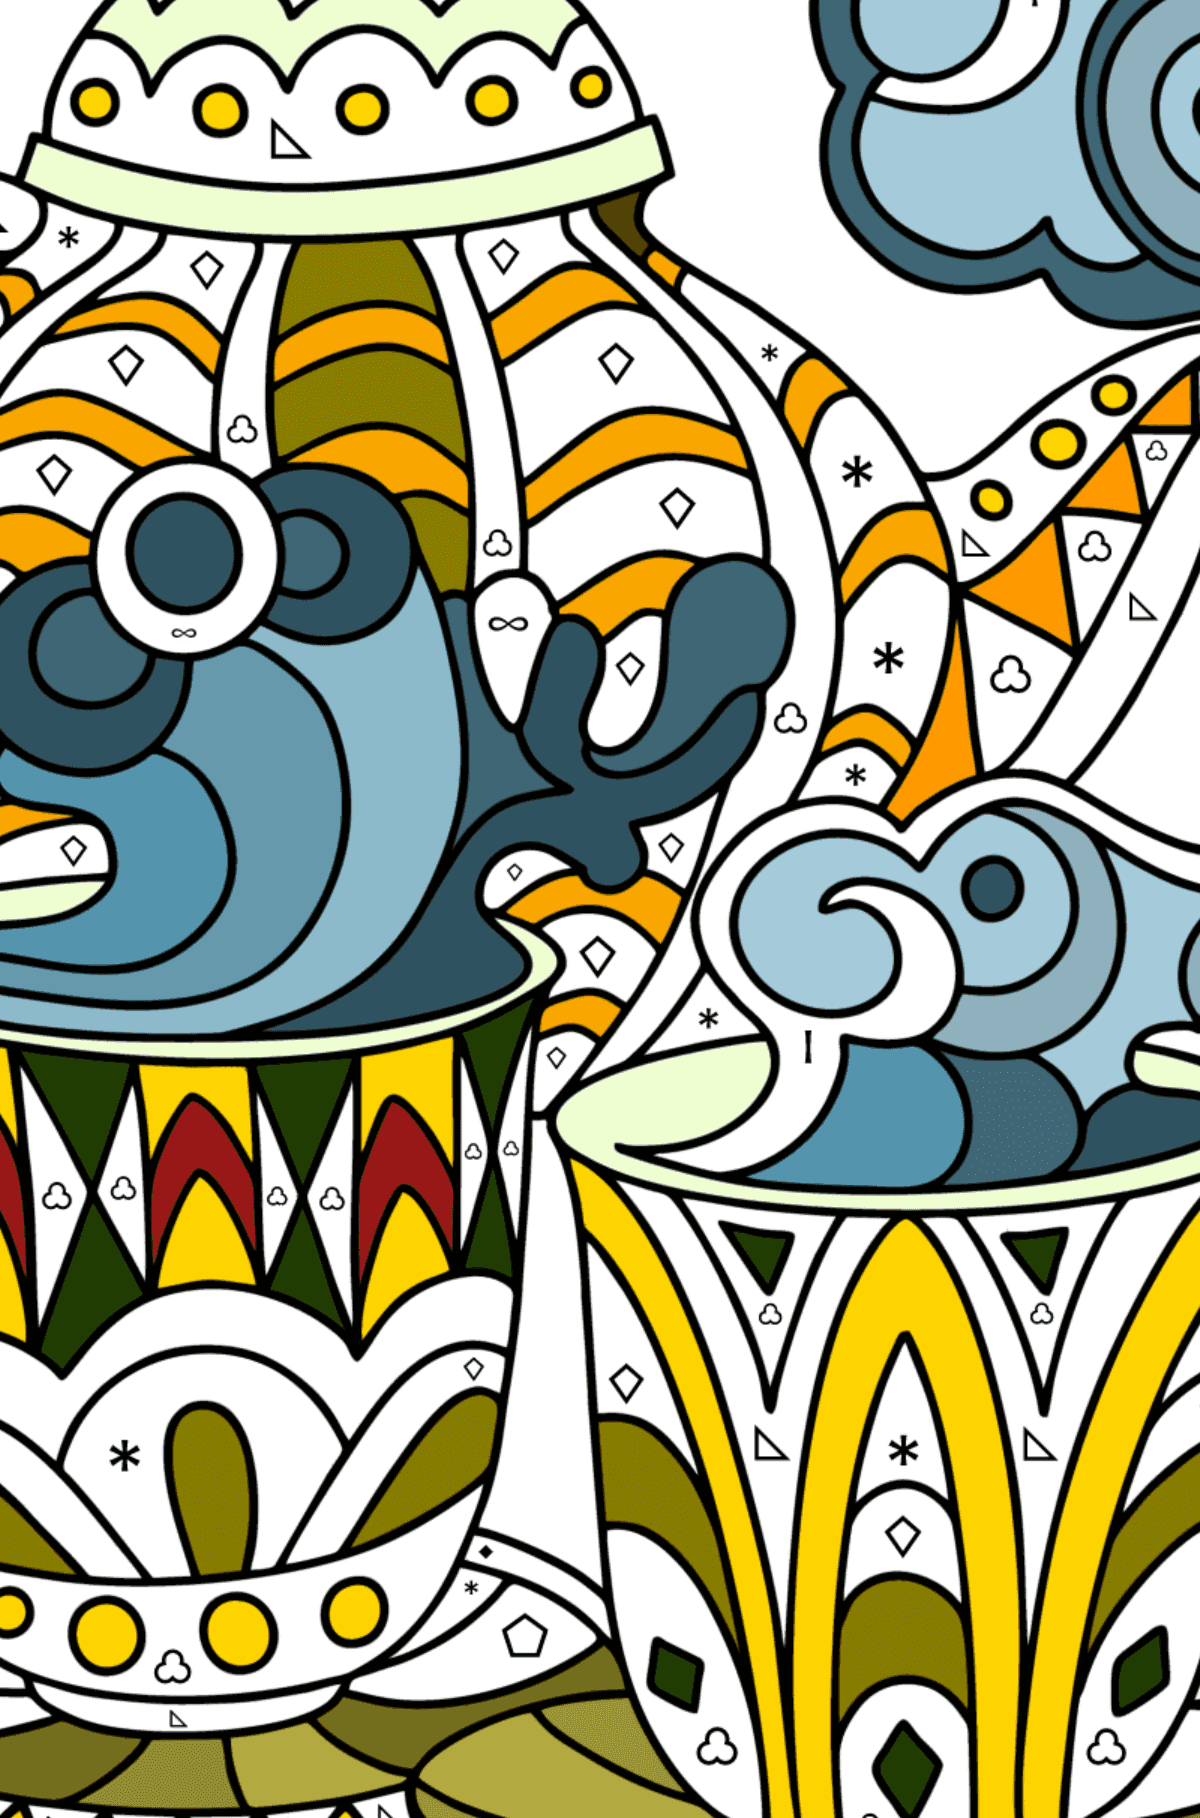 Dibujo para colorear Doodle para niños - Fiesta del té - Colorear por Símbolos para Niños